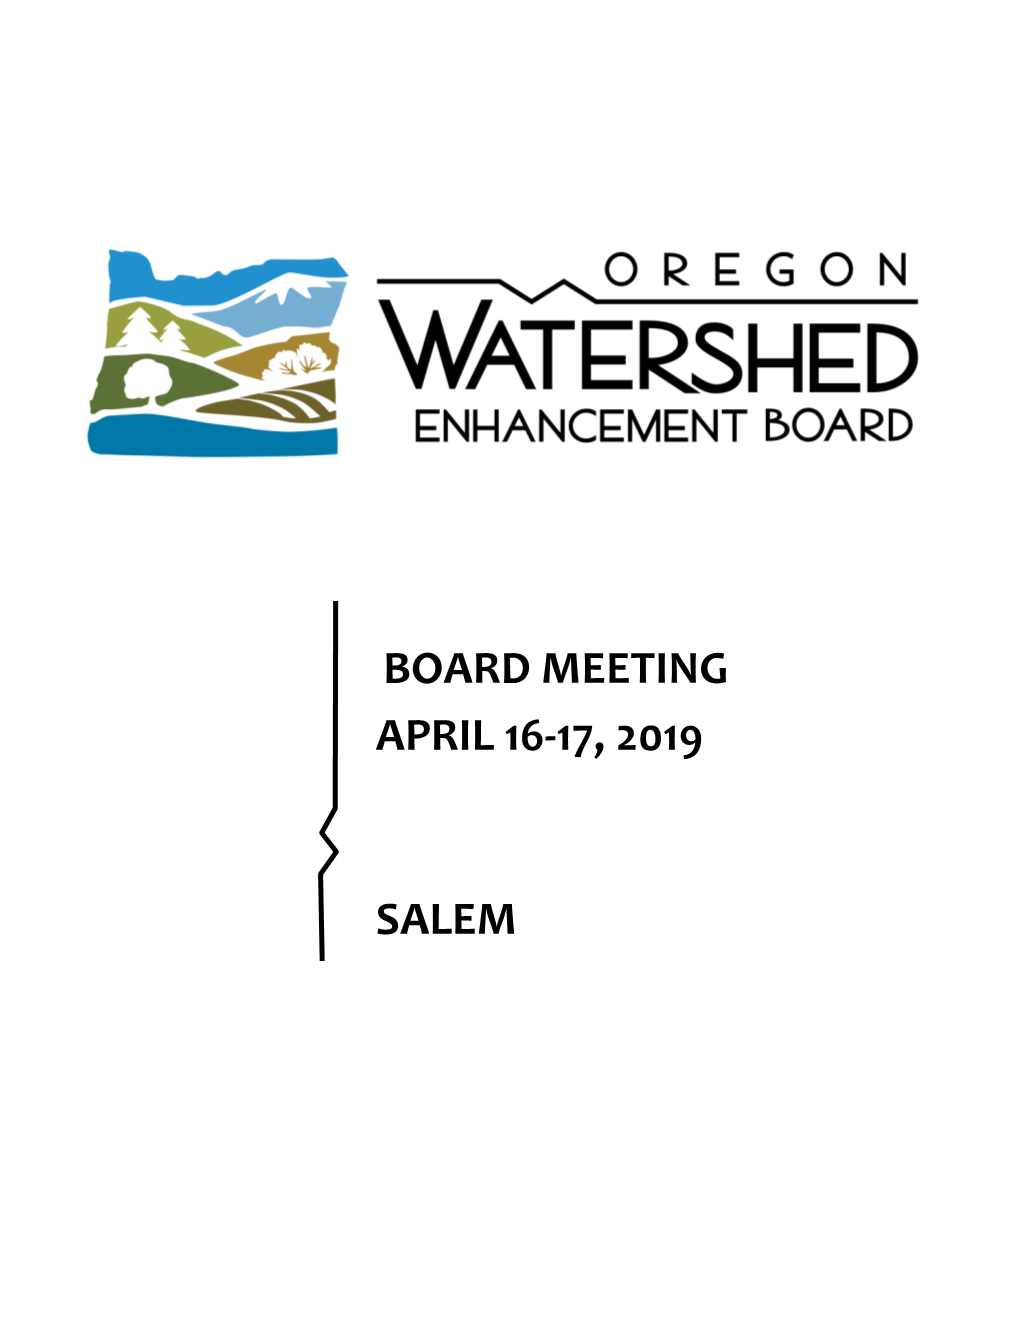 Board Meeting April 16-17, 2019 Salem